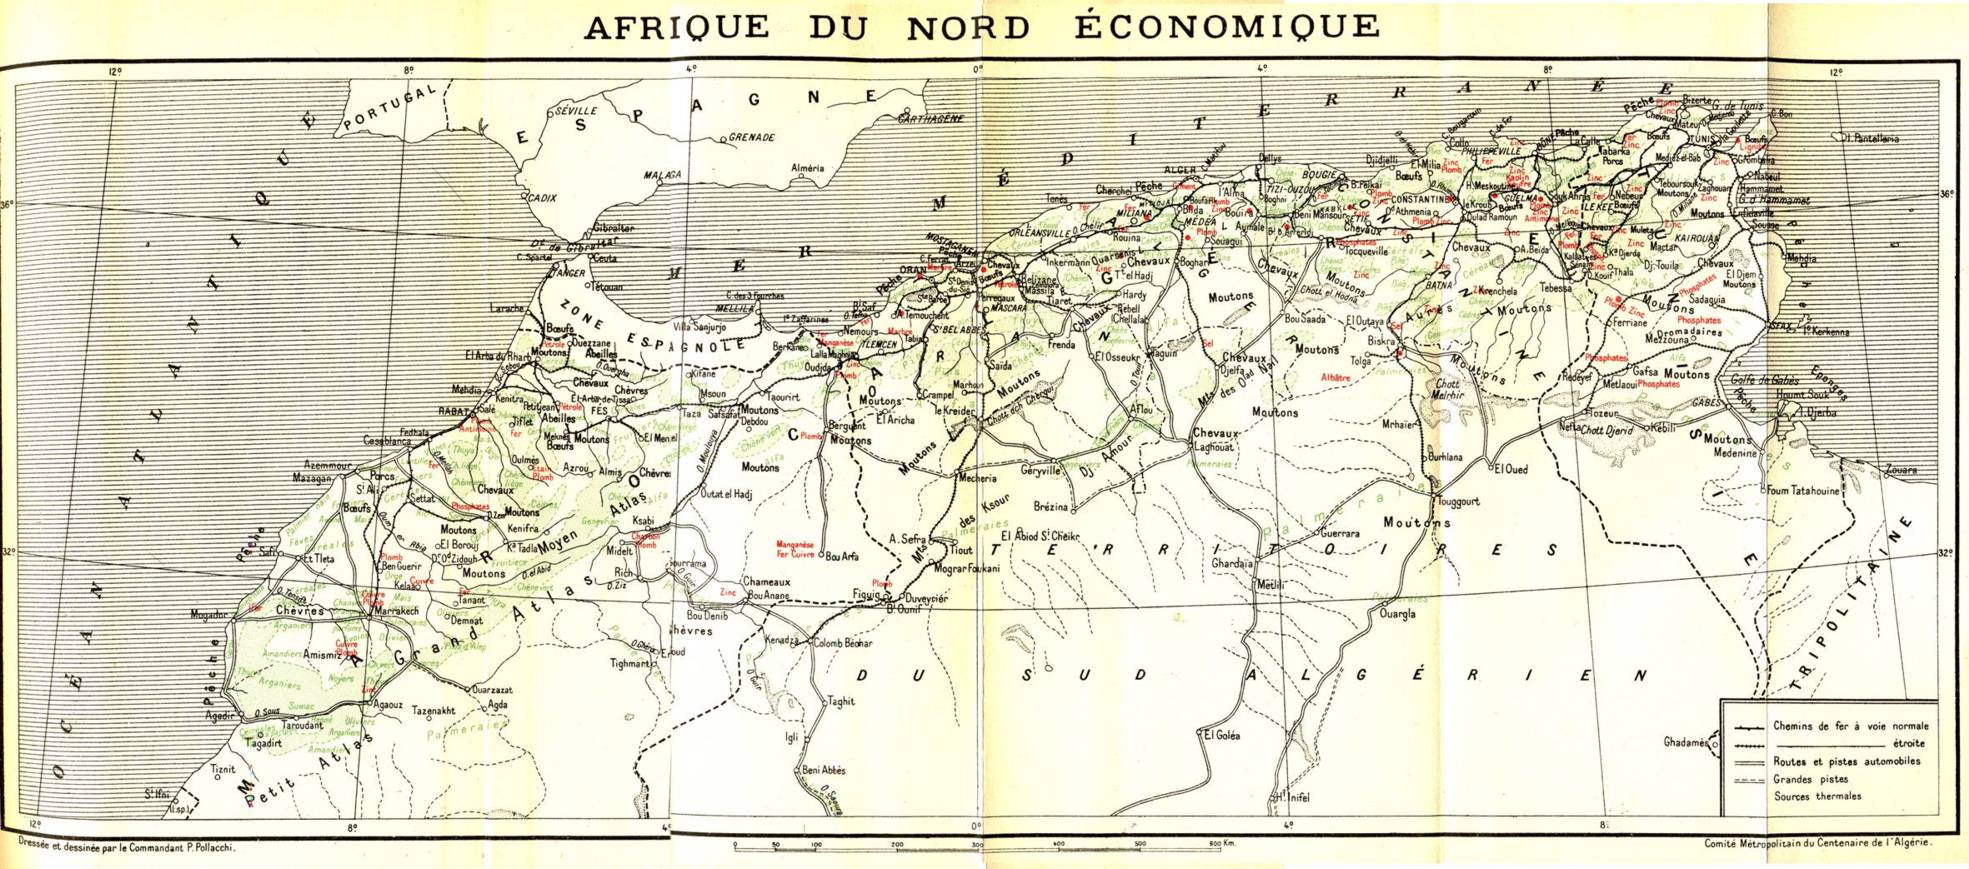 Afrique du nord économique